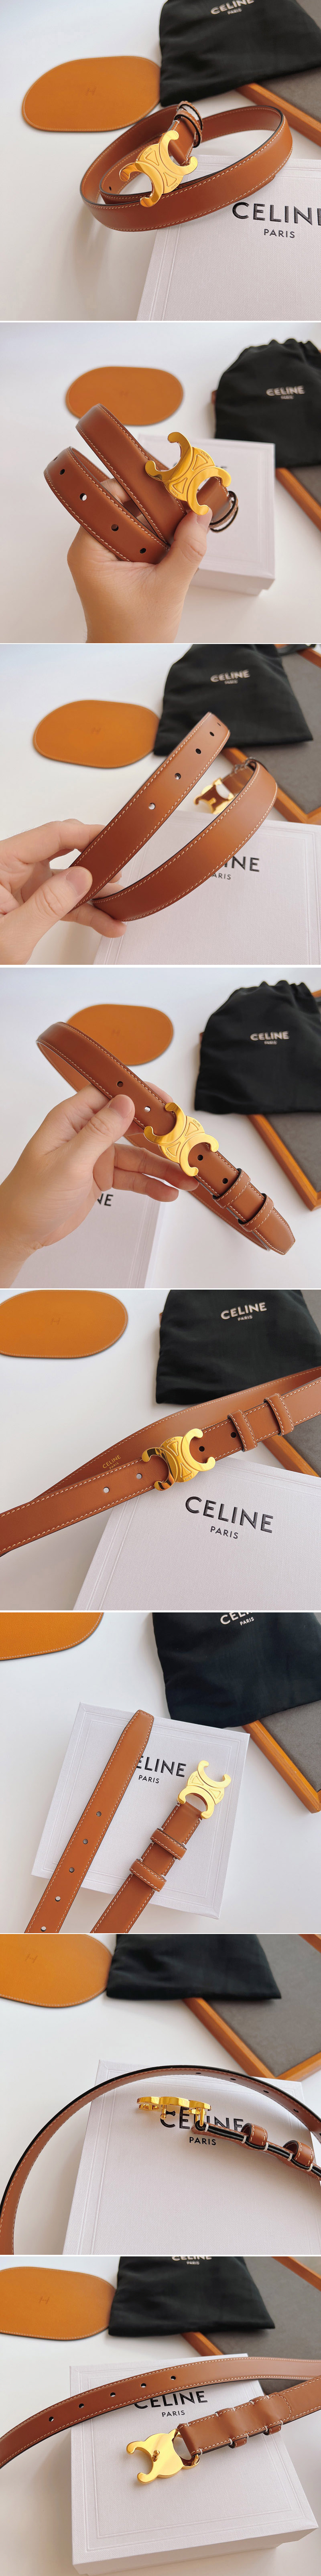 Replica Celine Belts